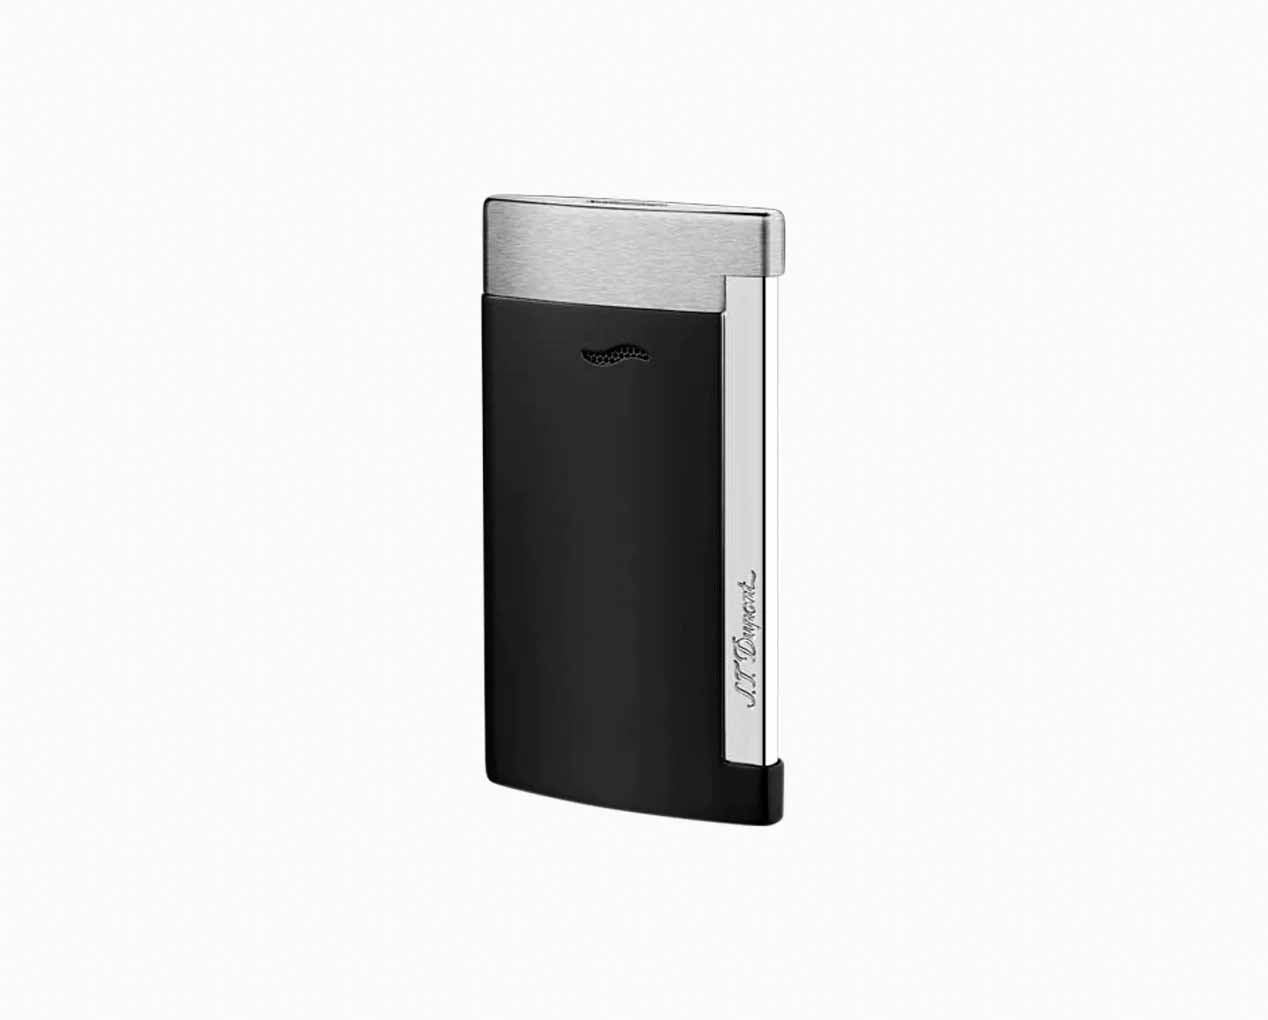 S T Dupont Slim 7 Lighter in Matte Black